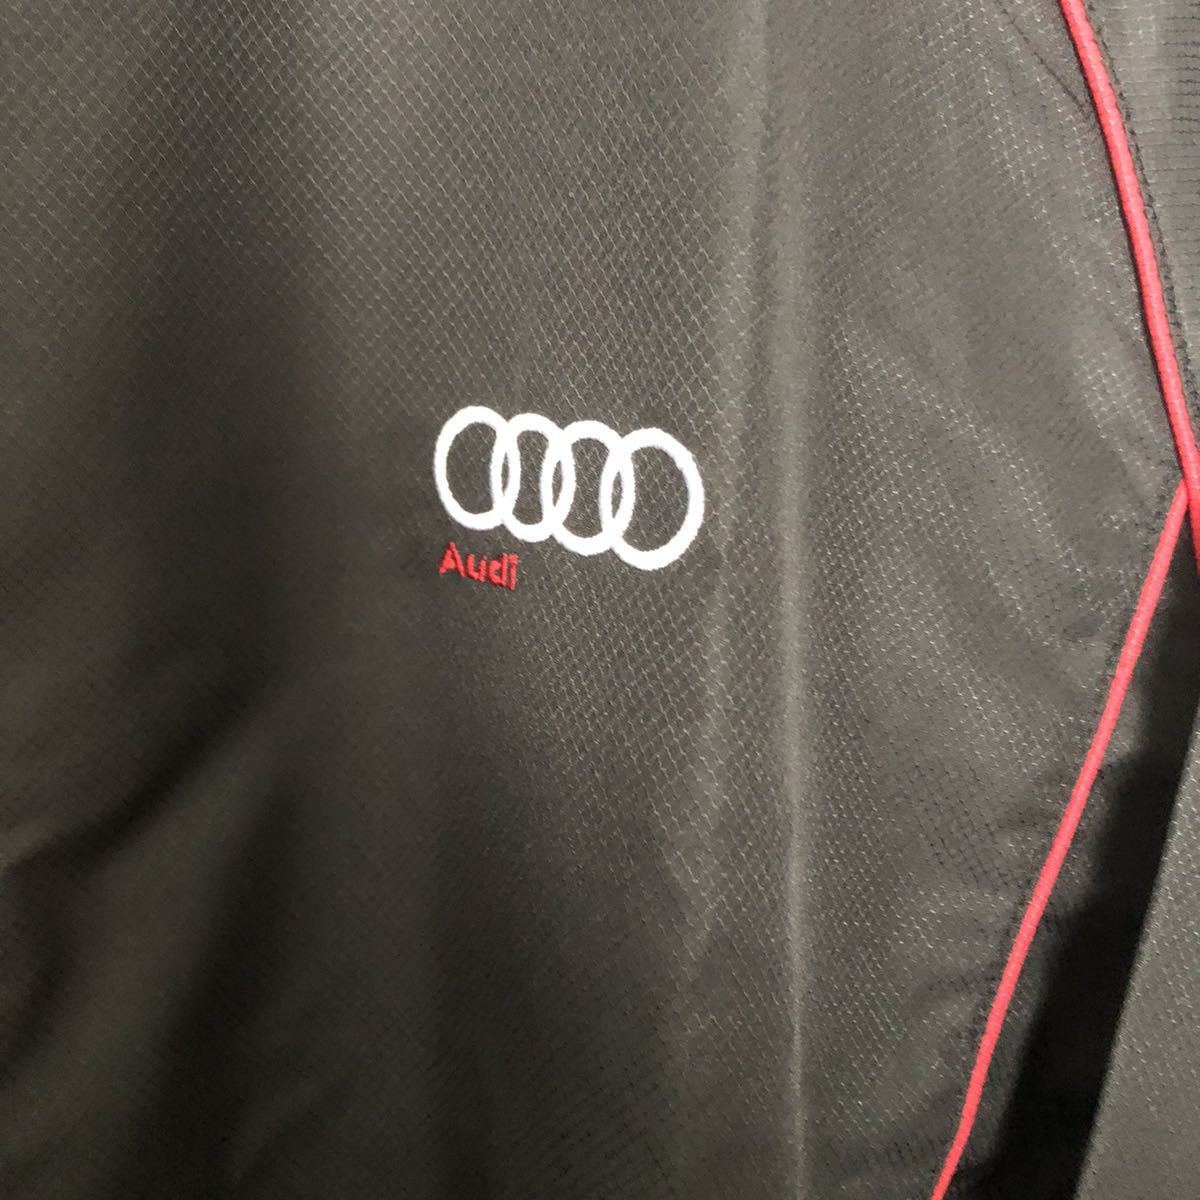 未使用★wundou ウンドウ Audi. アウディ ウインドブレーカー ジャケット ブルゾン ブラック 黒×赤 サイズM 正規品★の画像2